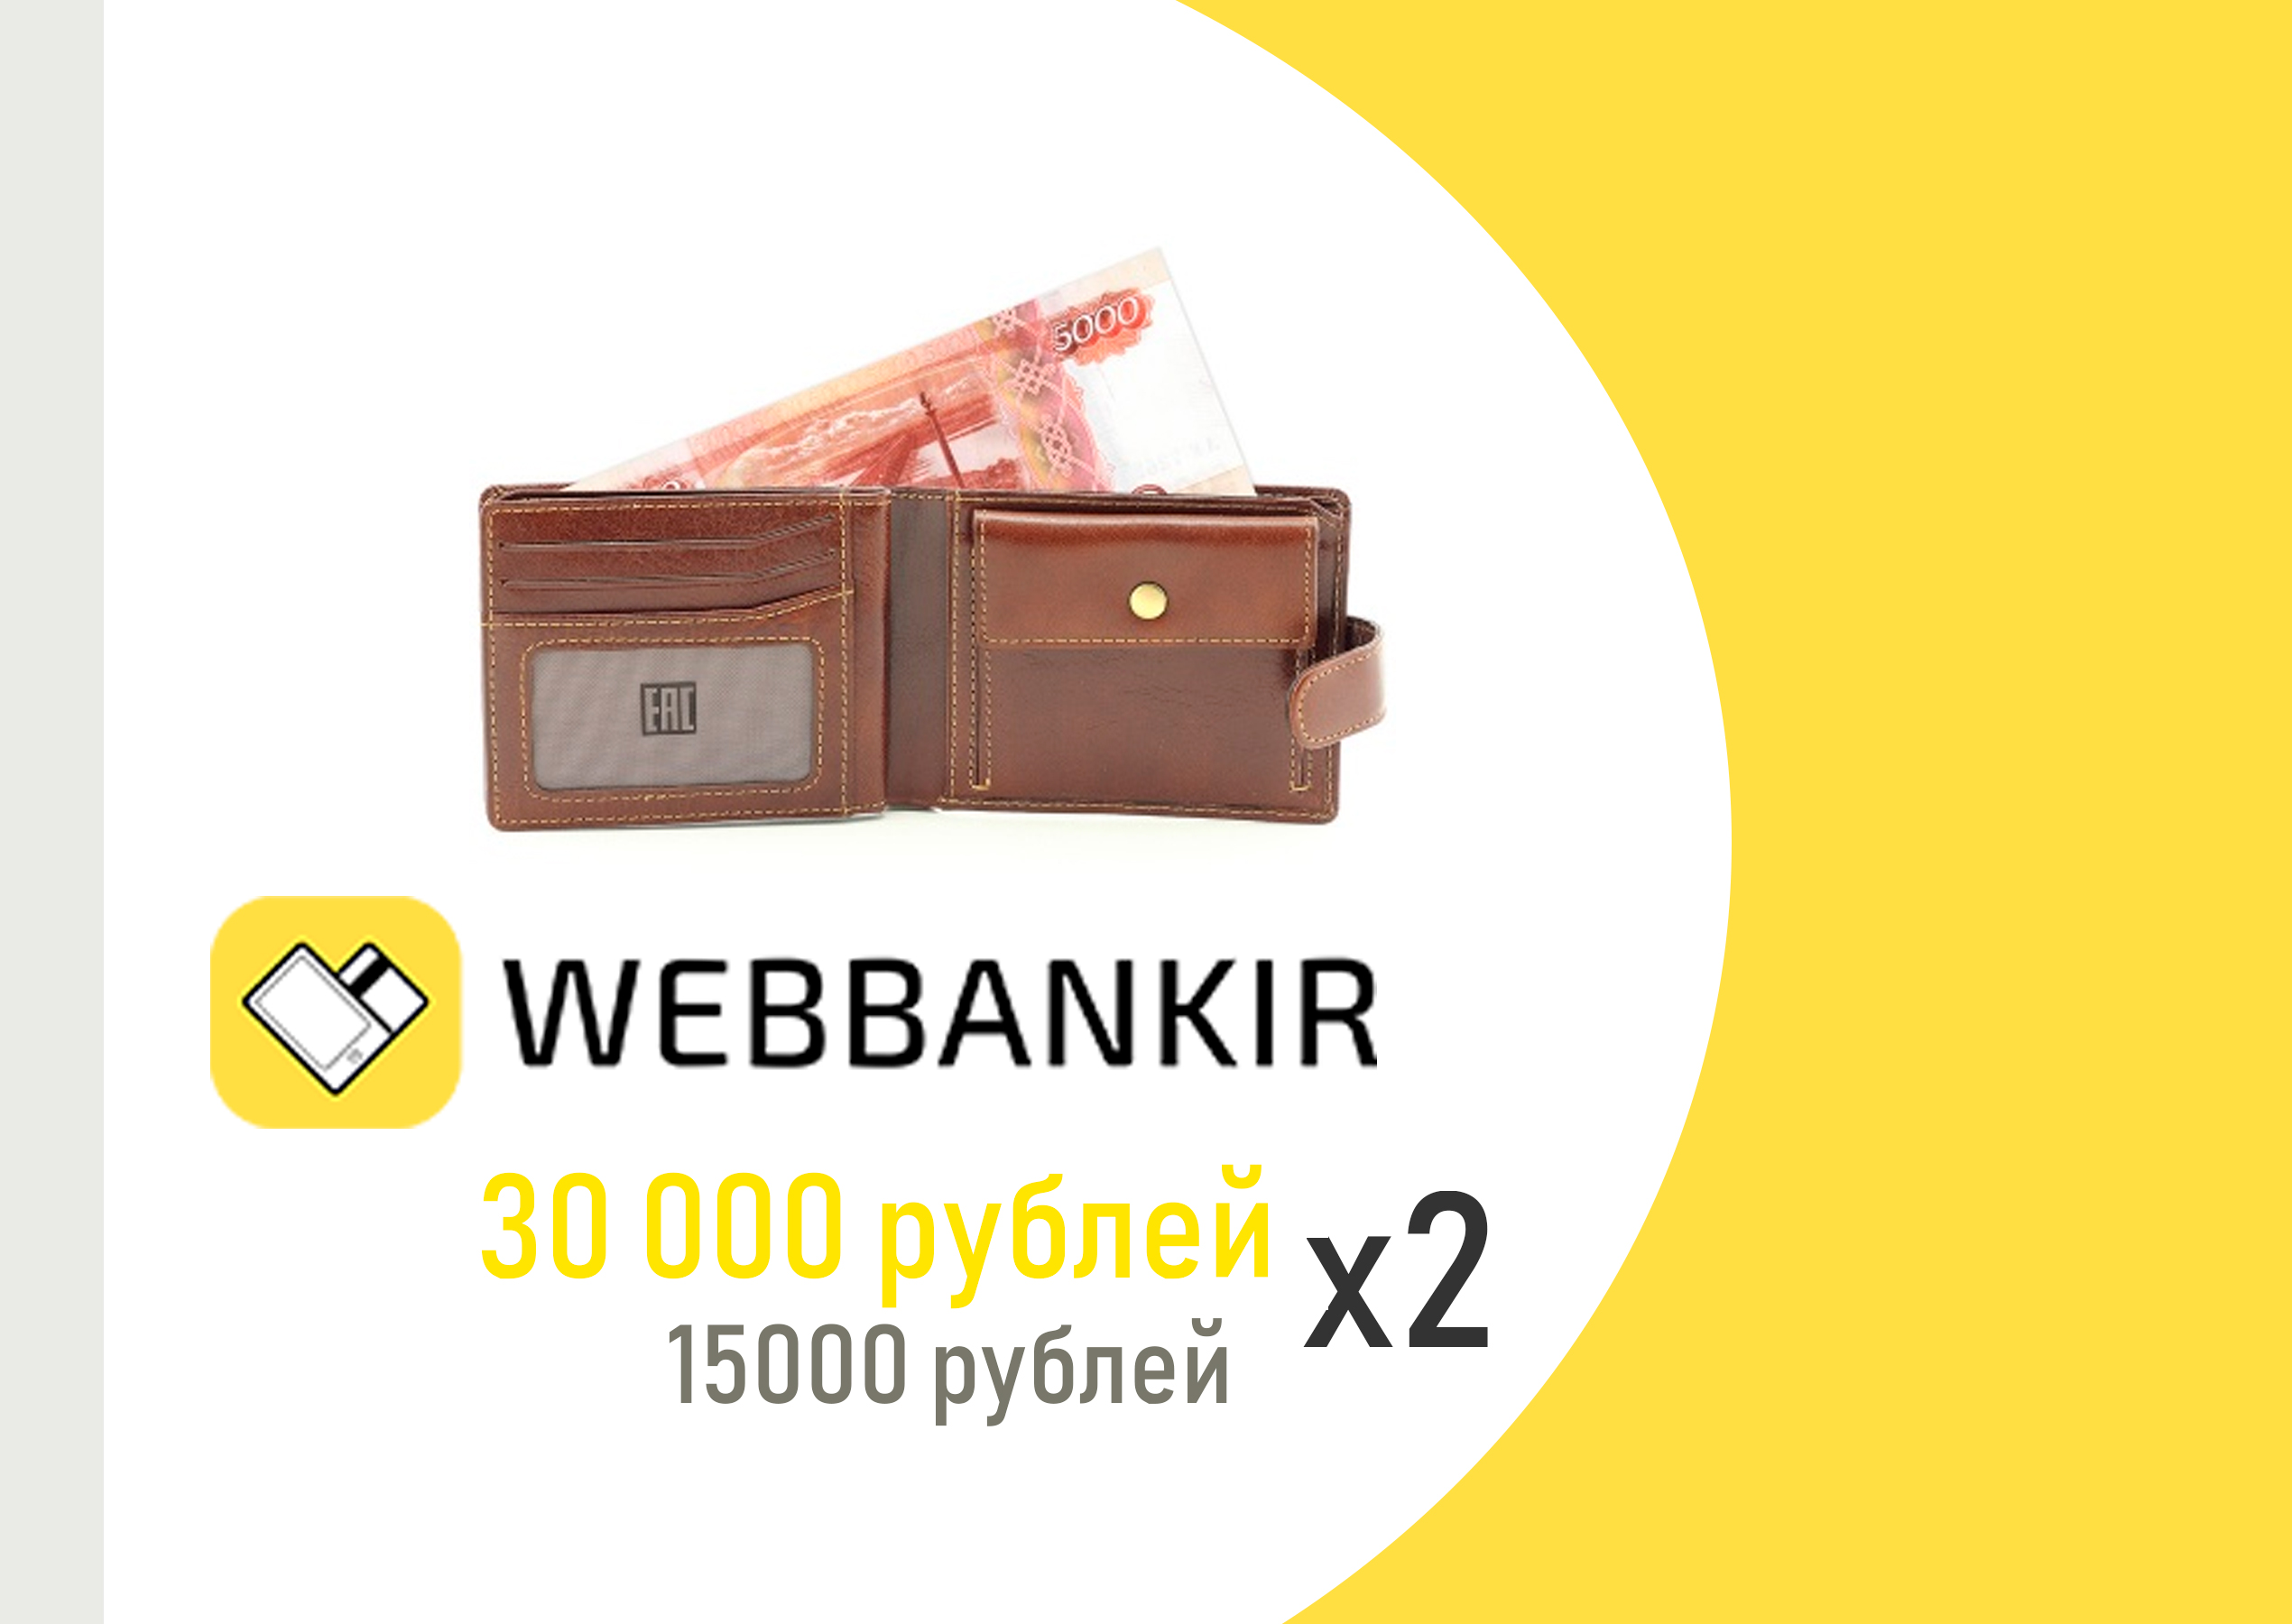 Веббанкир увеличил займы до 30000 рублей